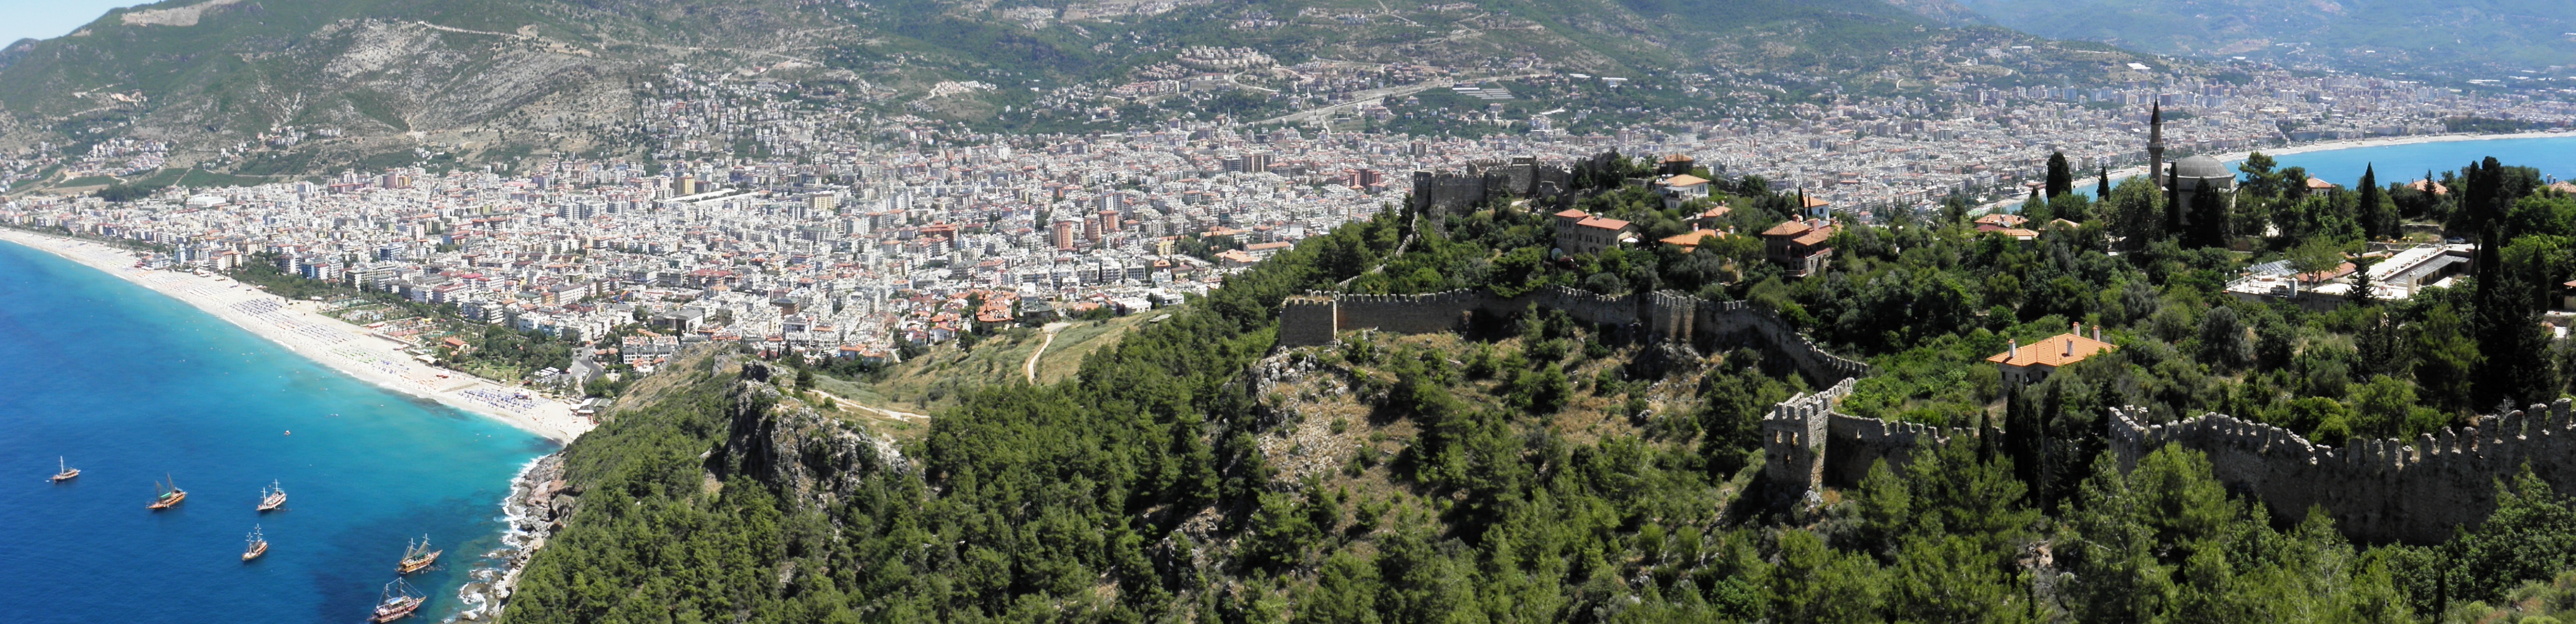 Seljuk fortress in alanya photo